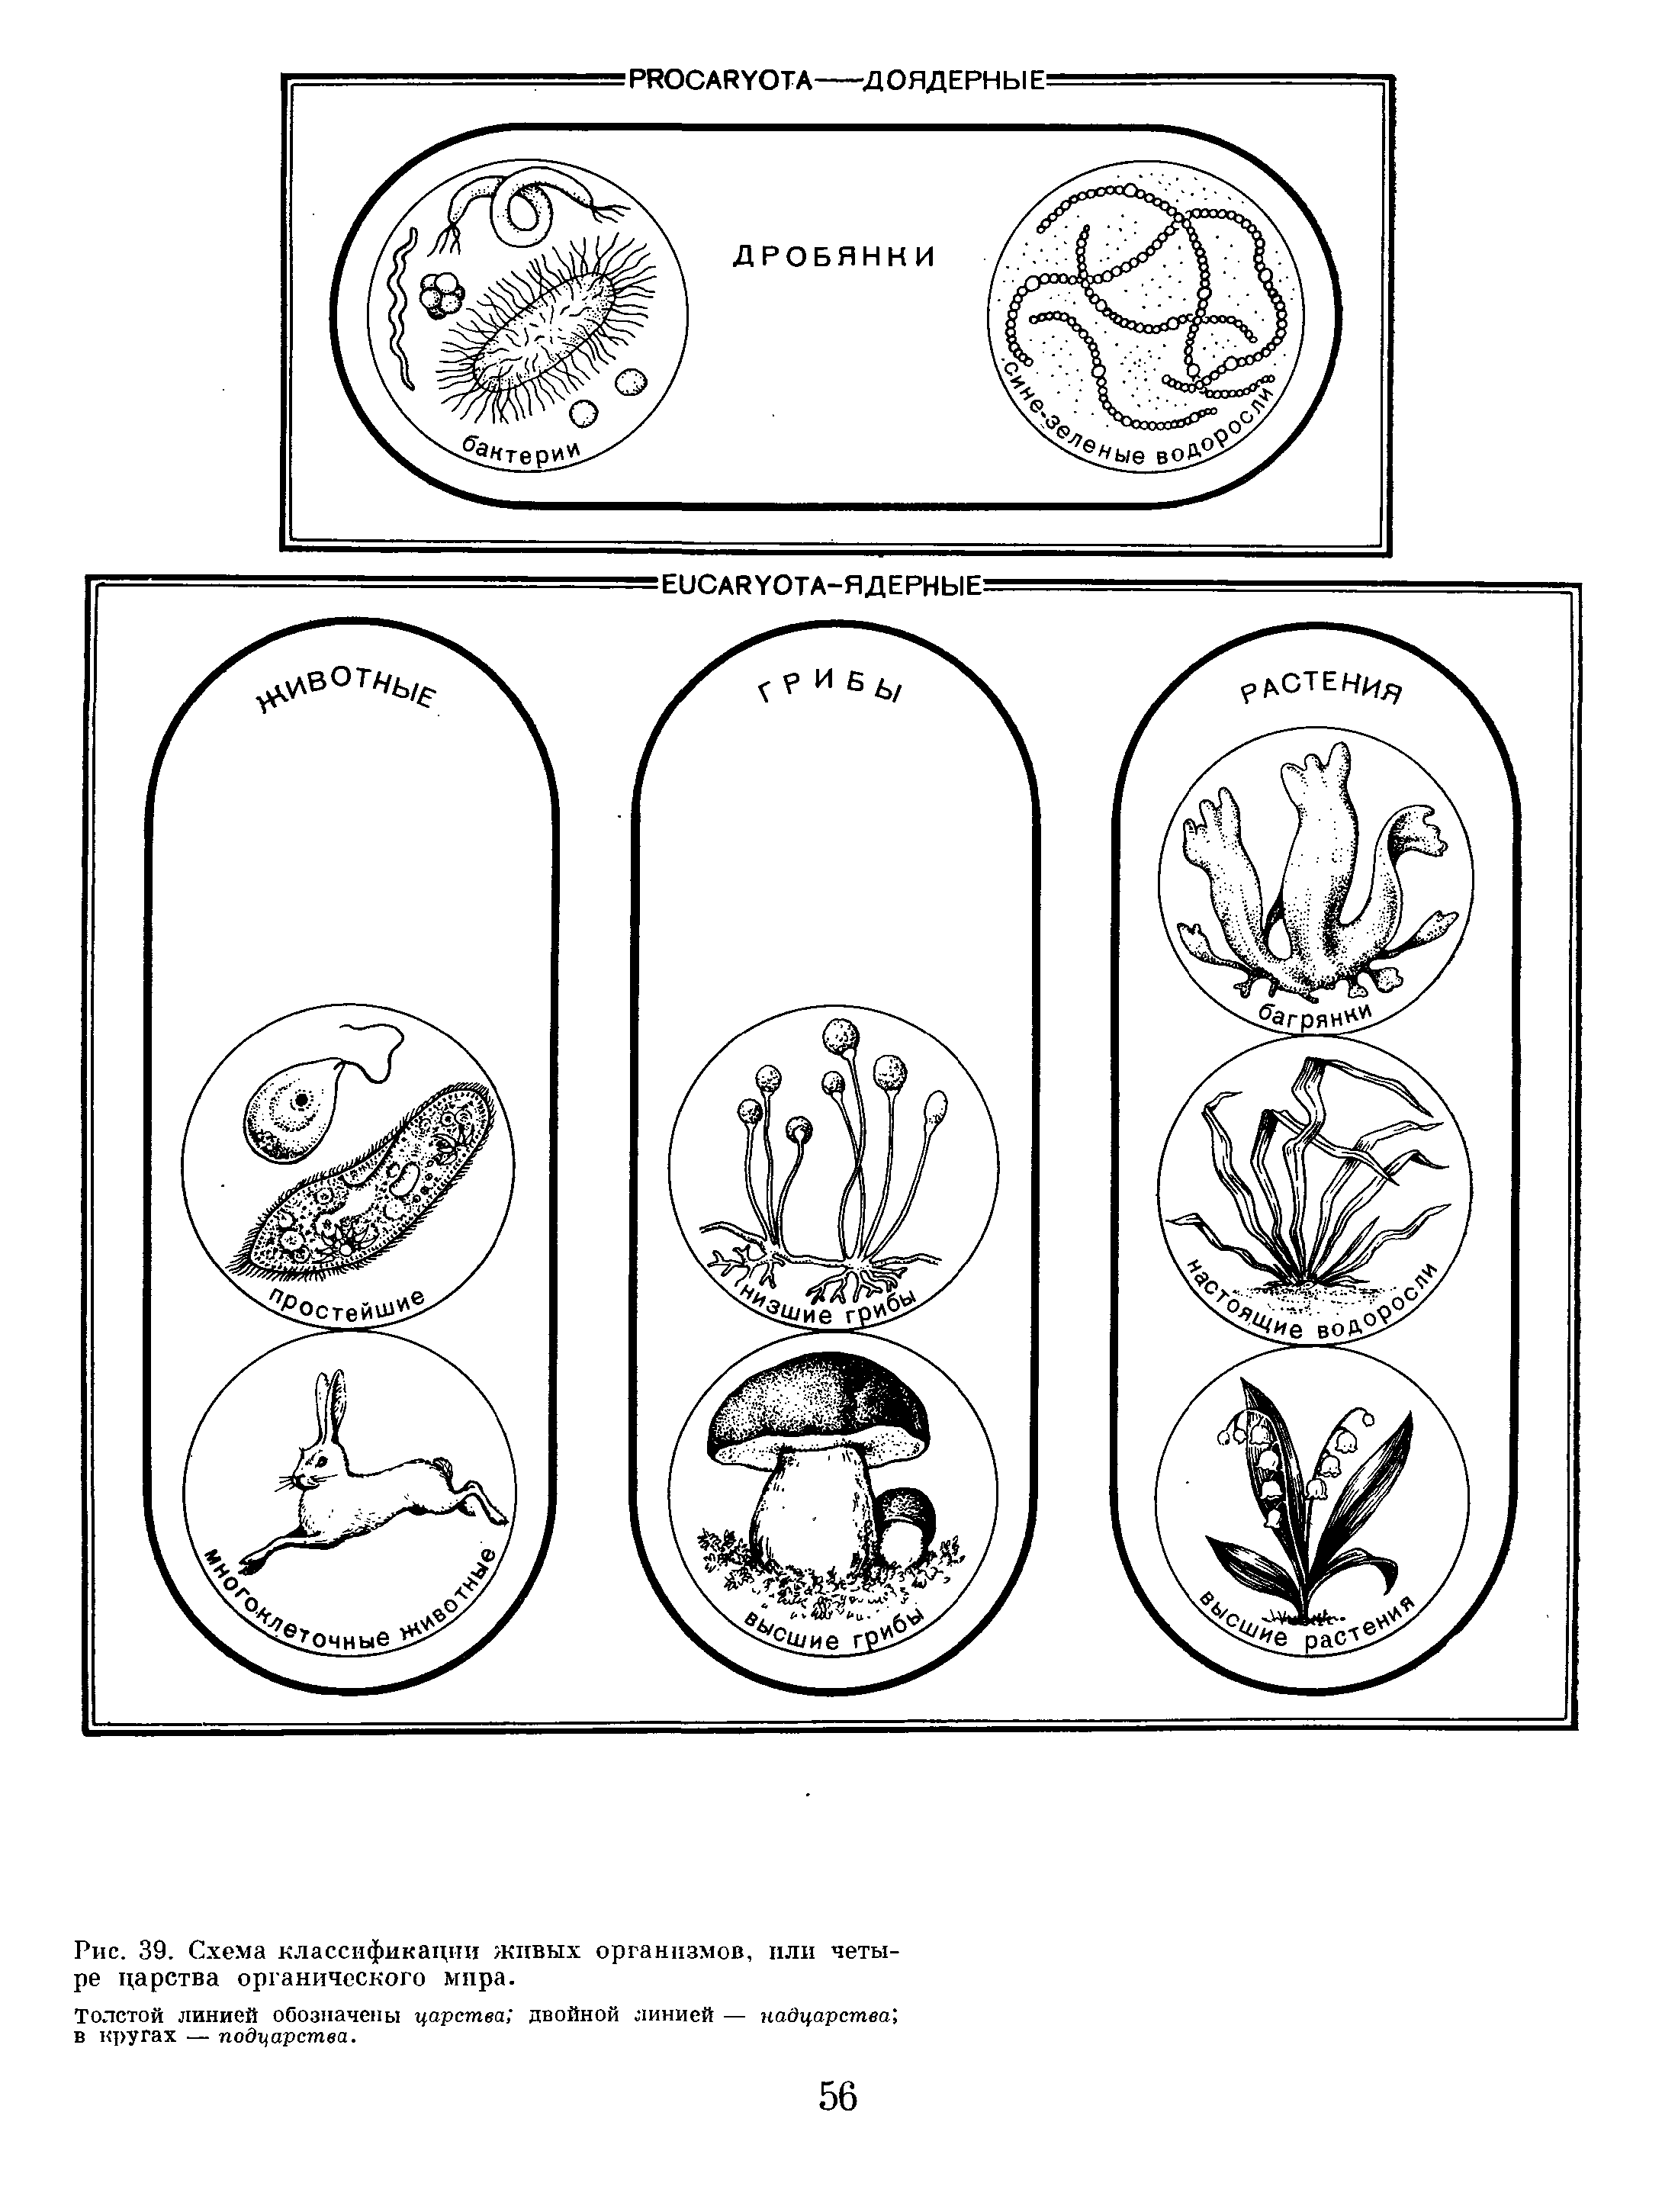 Четыре царства органического мира и схема